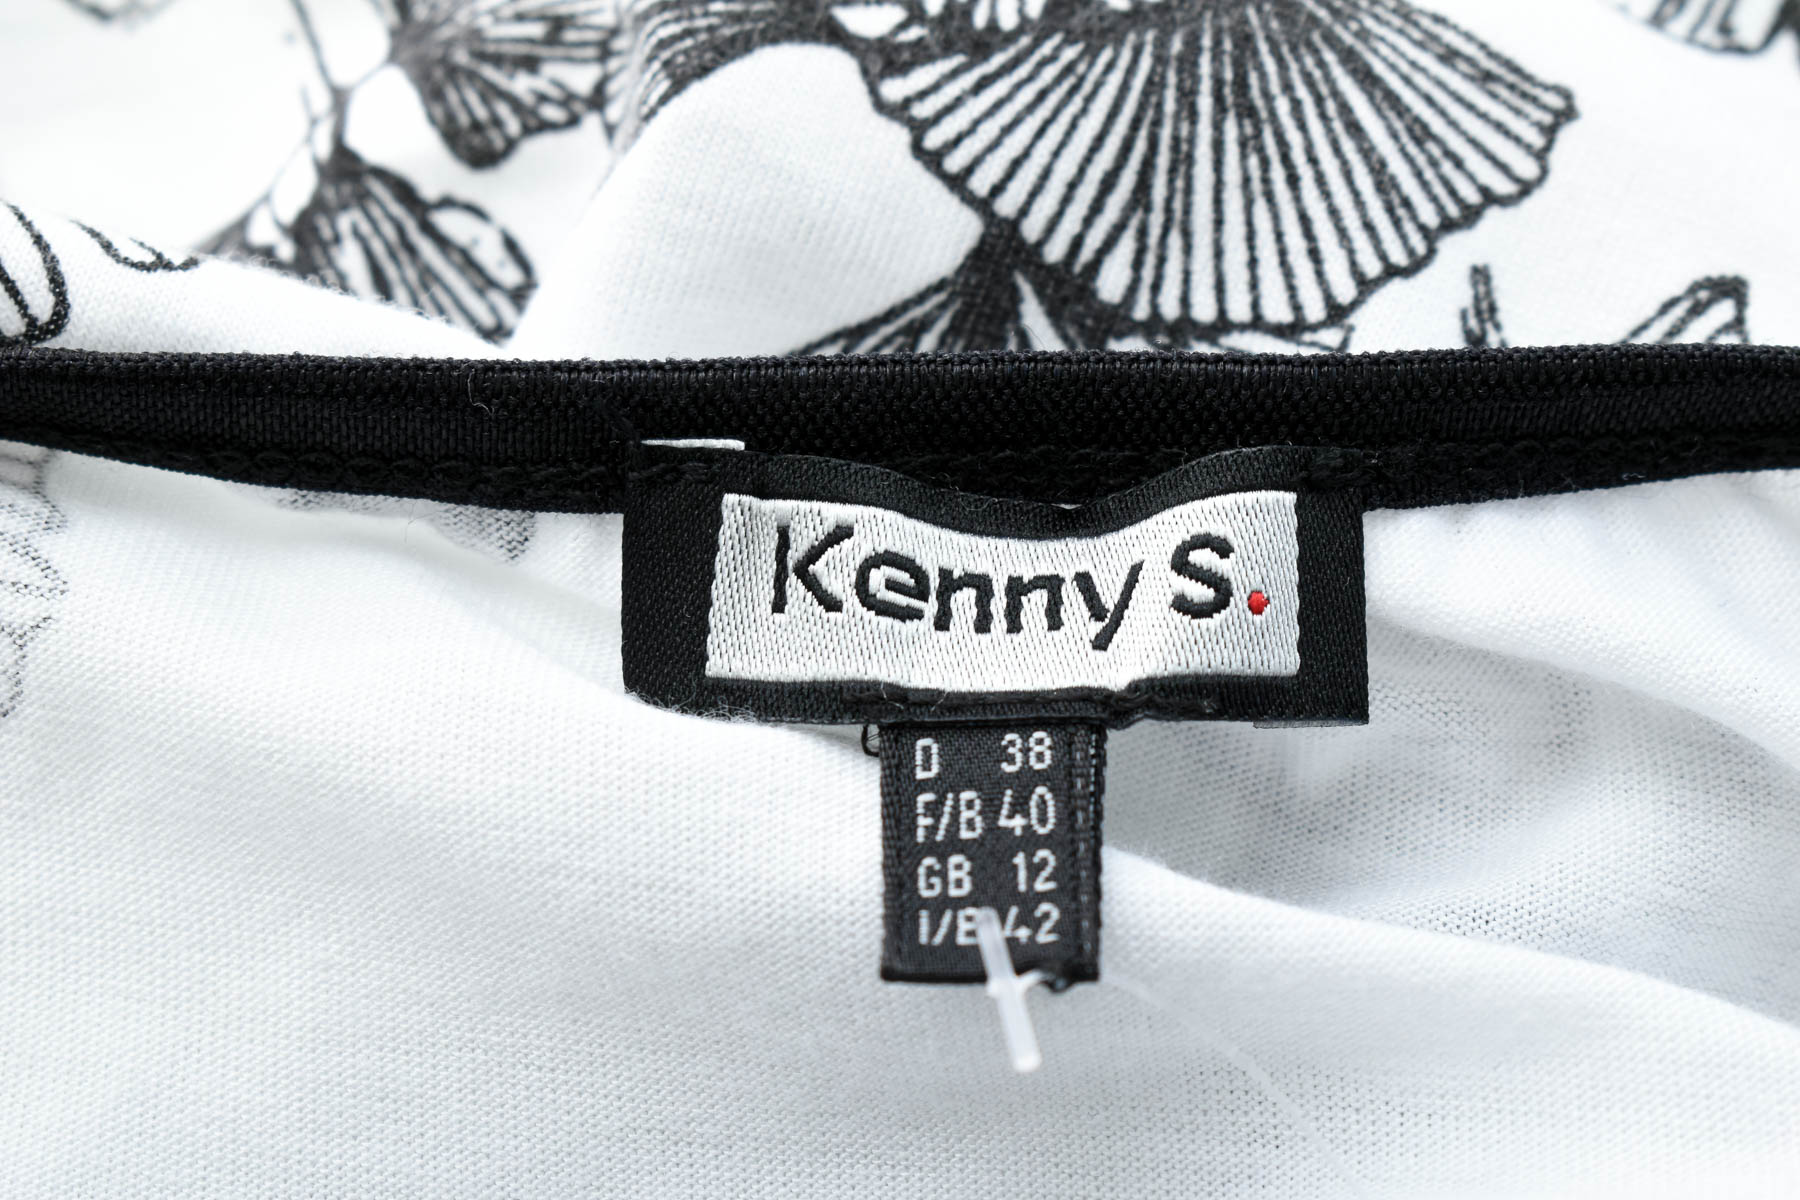 Women's blouse - Kenny S. - 2